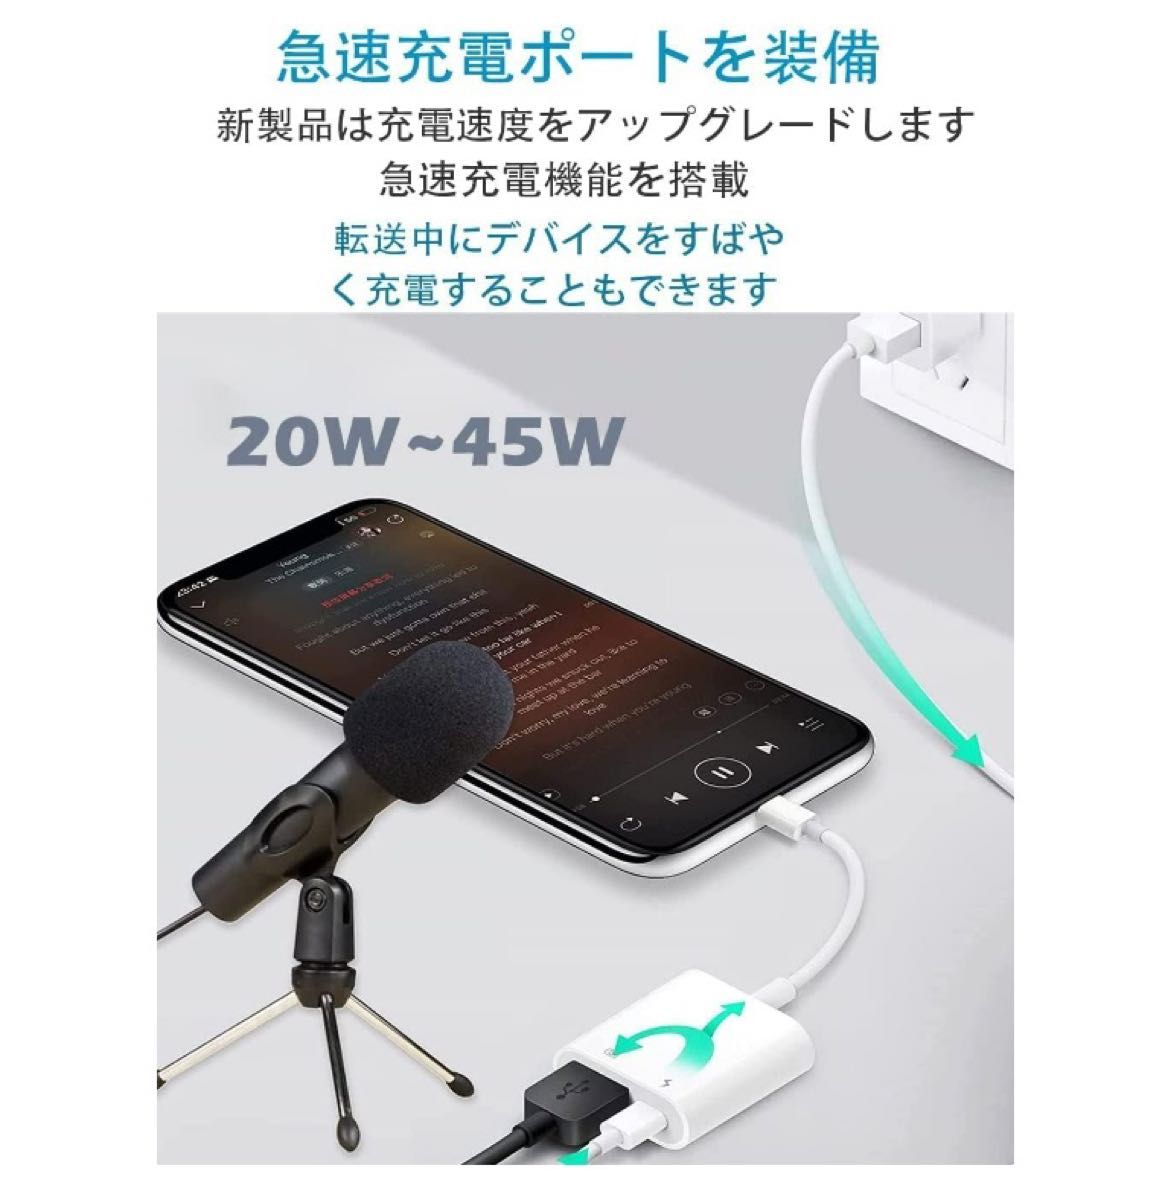 【2in1】iPhone 用カメラアダプタ USB変換 iPad/iPod対応